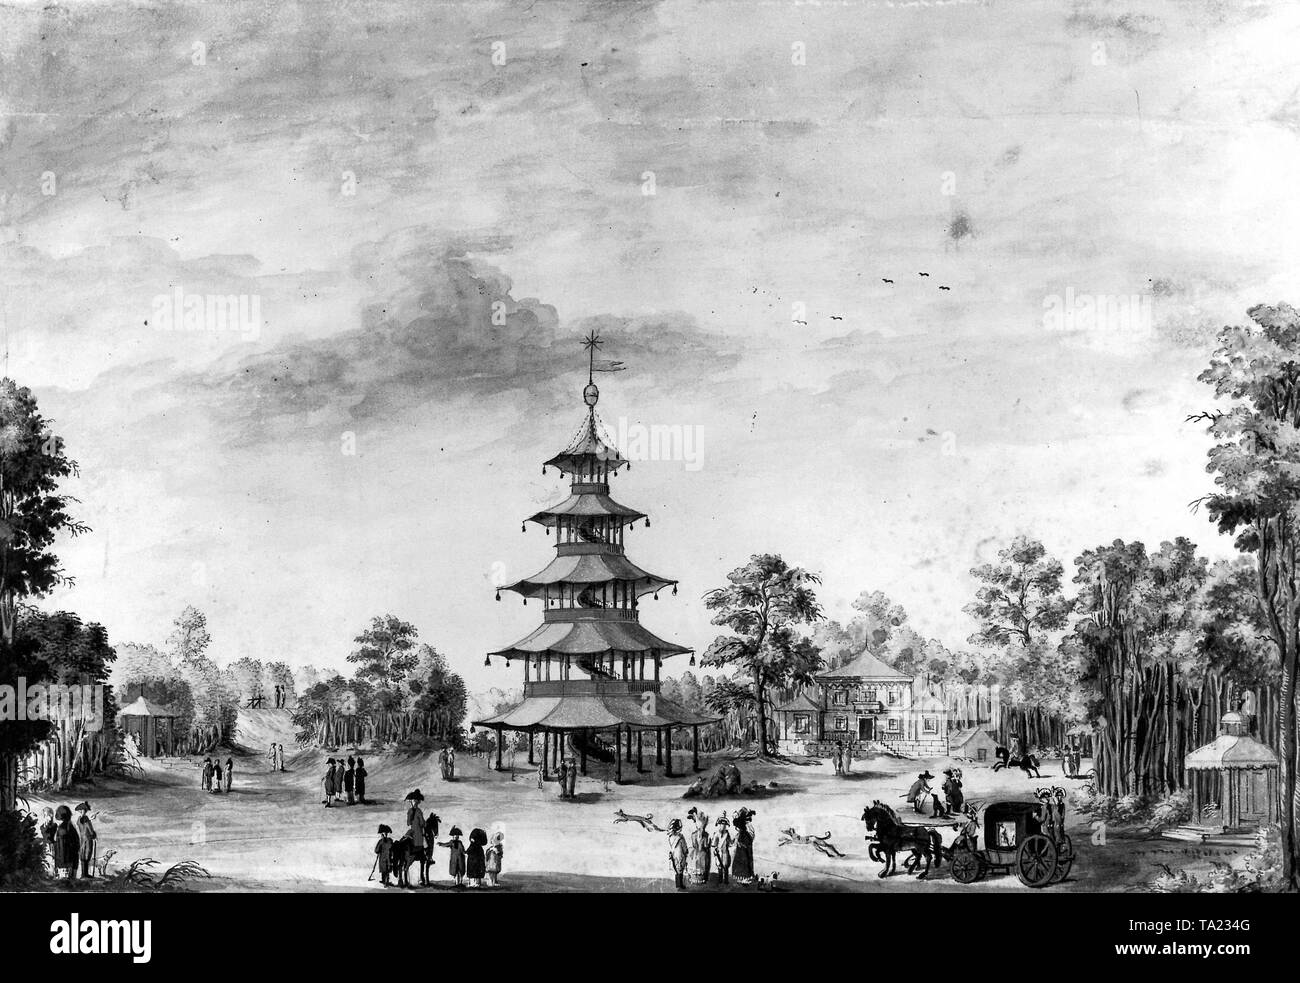 La prima rappresentazione del Giardino Inglese con la torre cinese a Monaco di Baviera. Auqarelll da un artista sconosciuto da intorno al 1790. Foto Stock